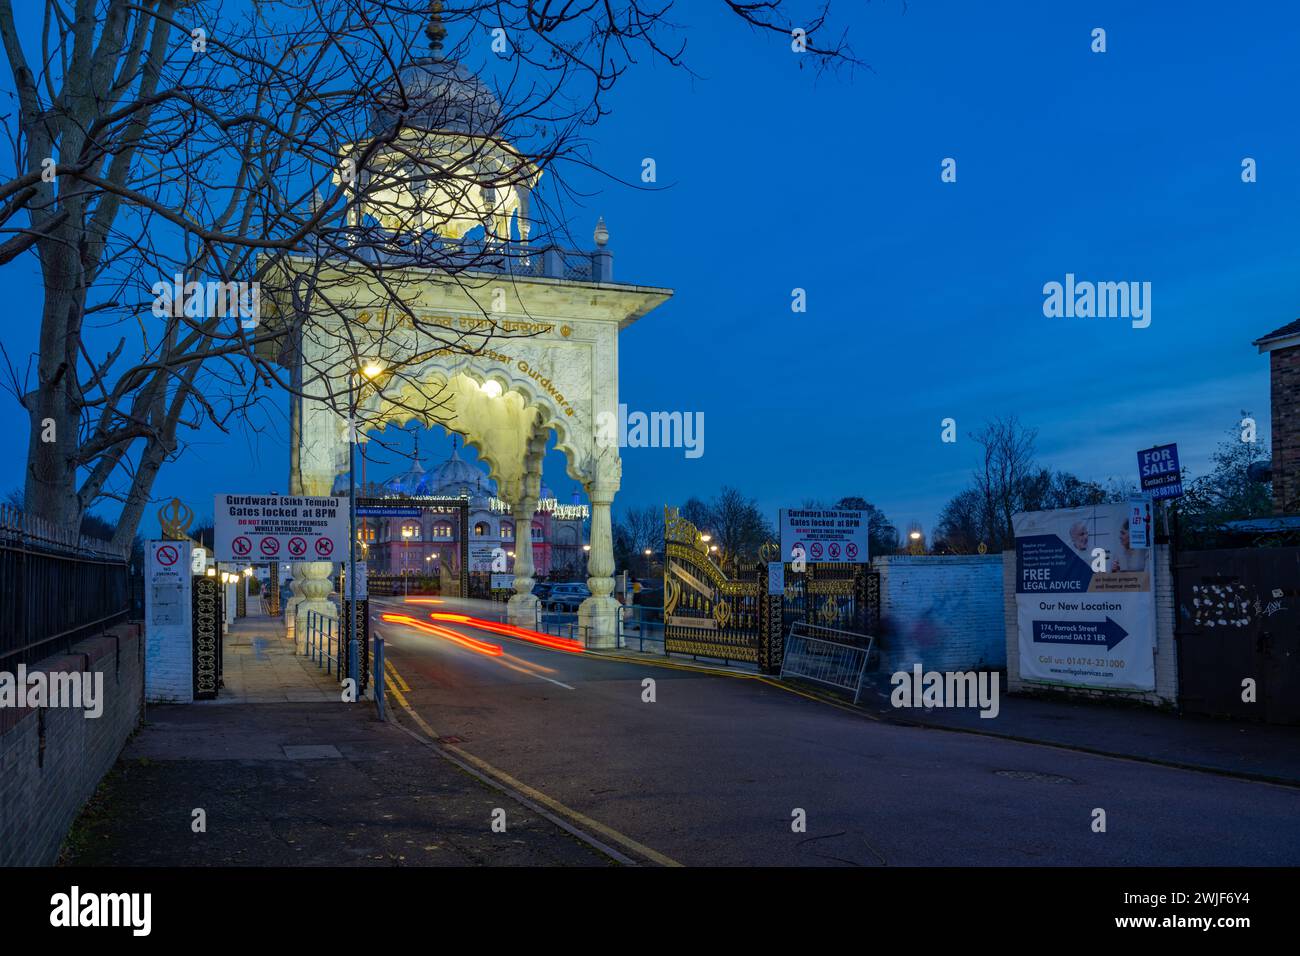 L'entrée de Siri Guru Nanak Darbar Gurdwara Gravesend kent au crépuscule. Banque D'Images